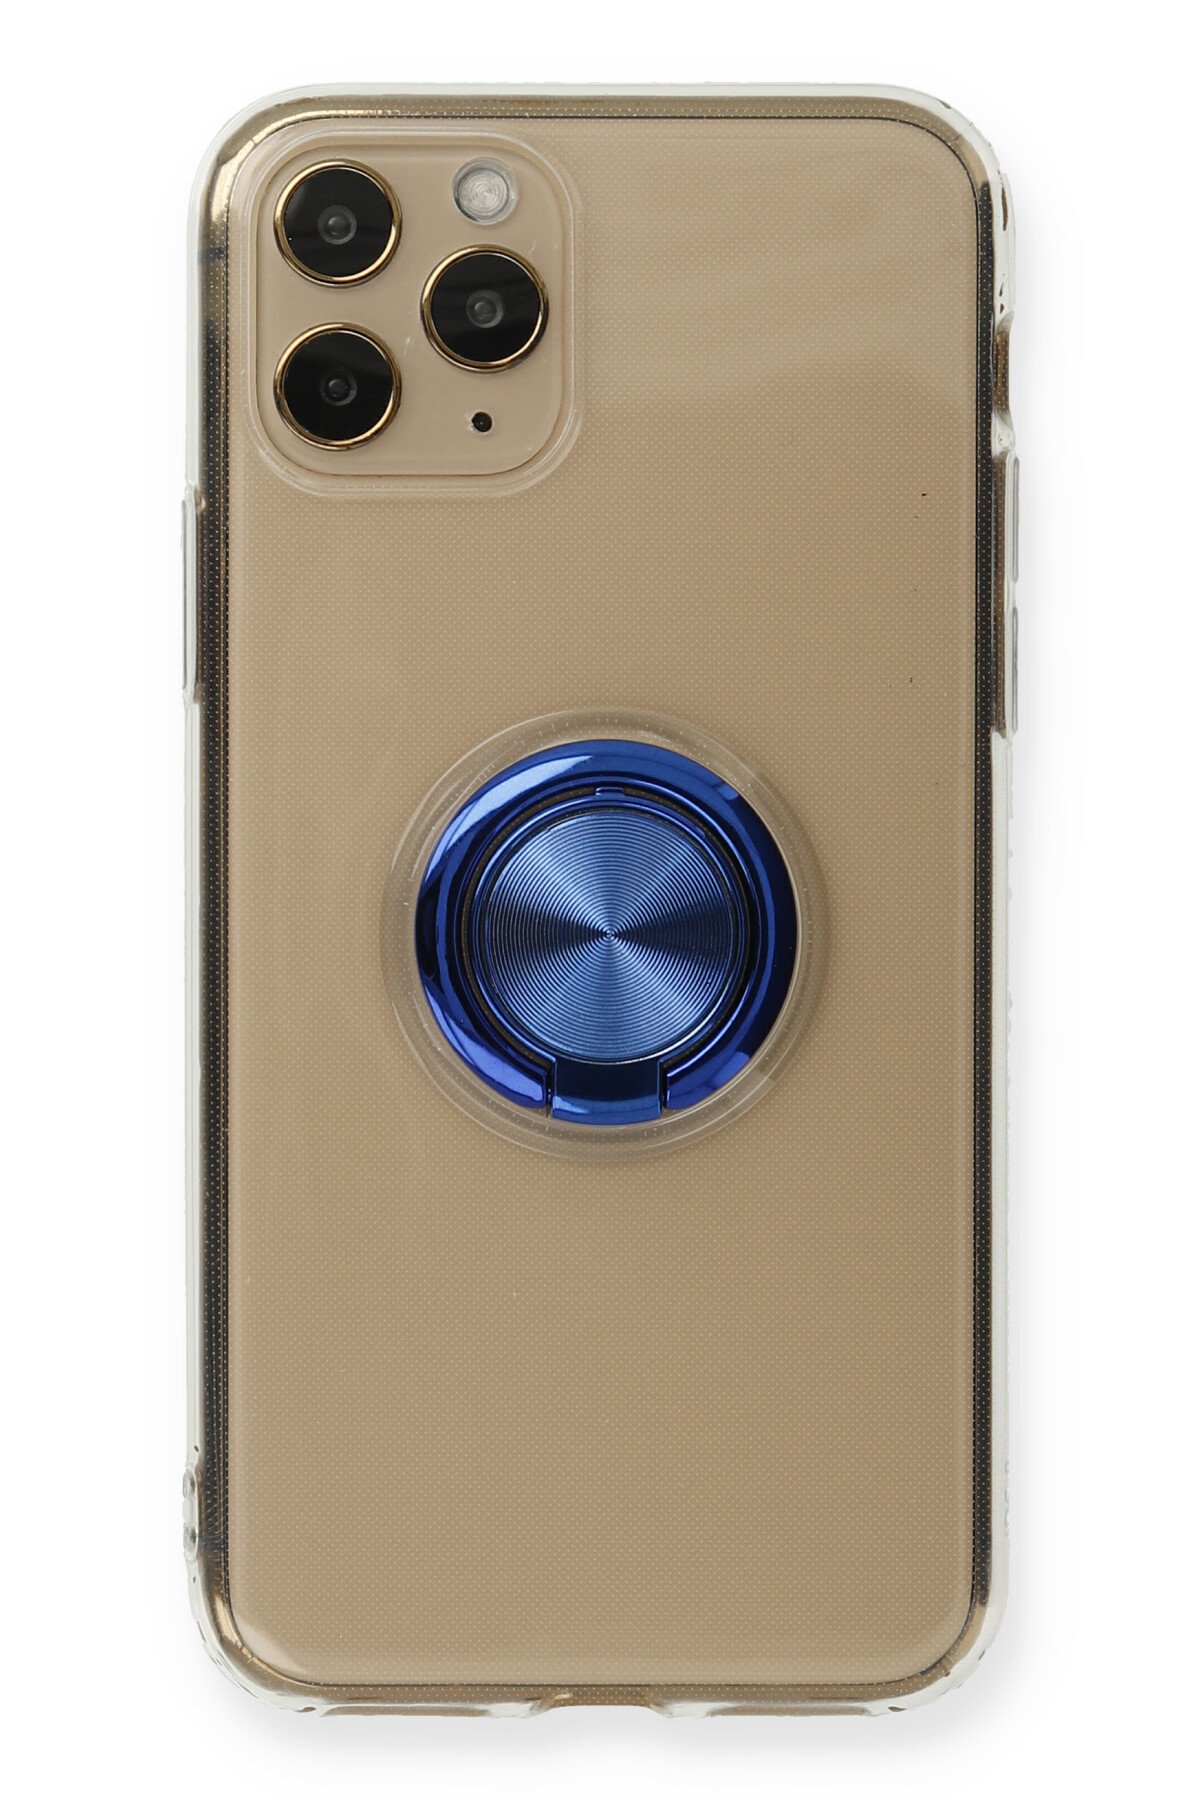 Newface iPhone 11 Pro Kılıf Ebruli Lansman Silikon - Mavi-Gri